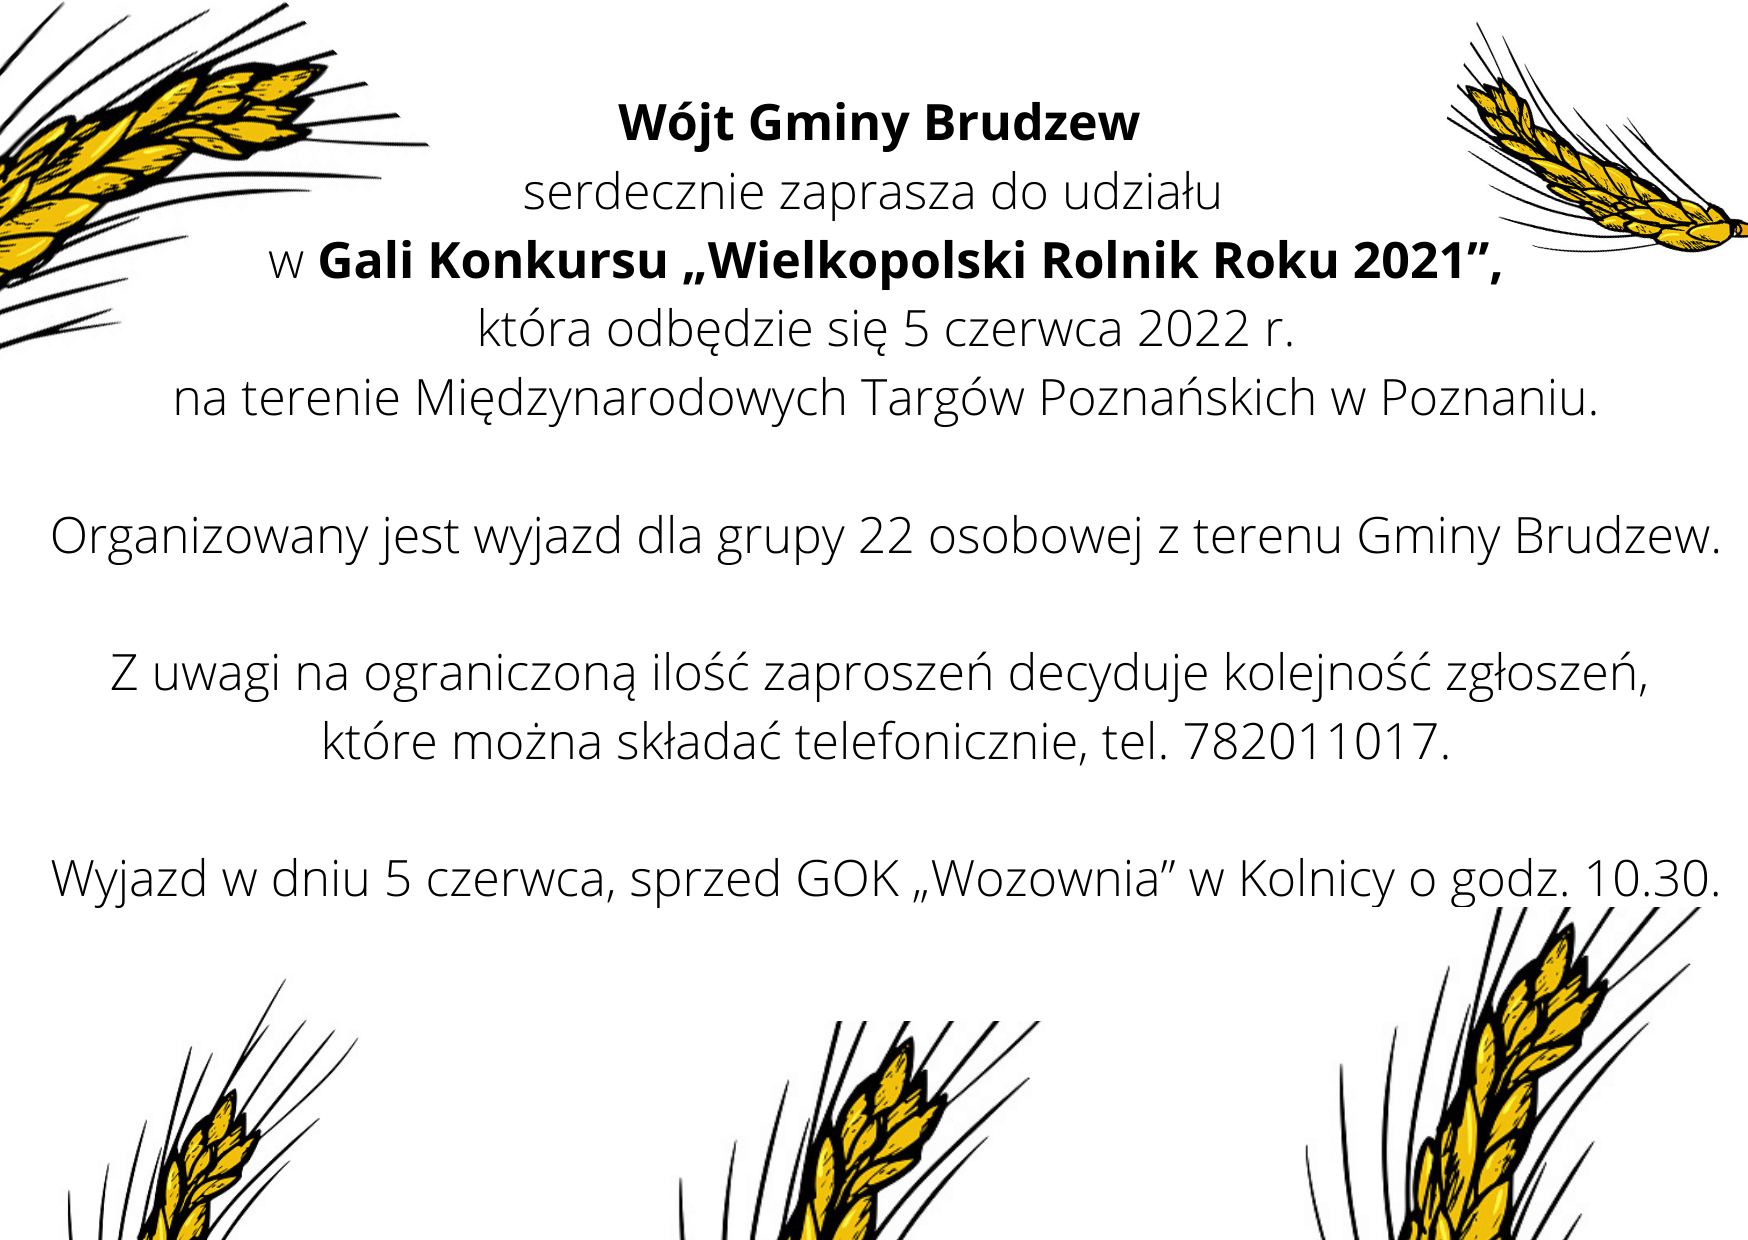 wielkopolski-rolnik-roku